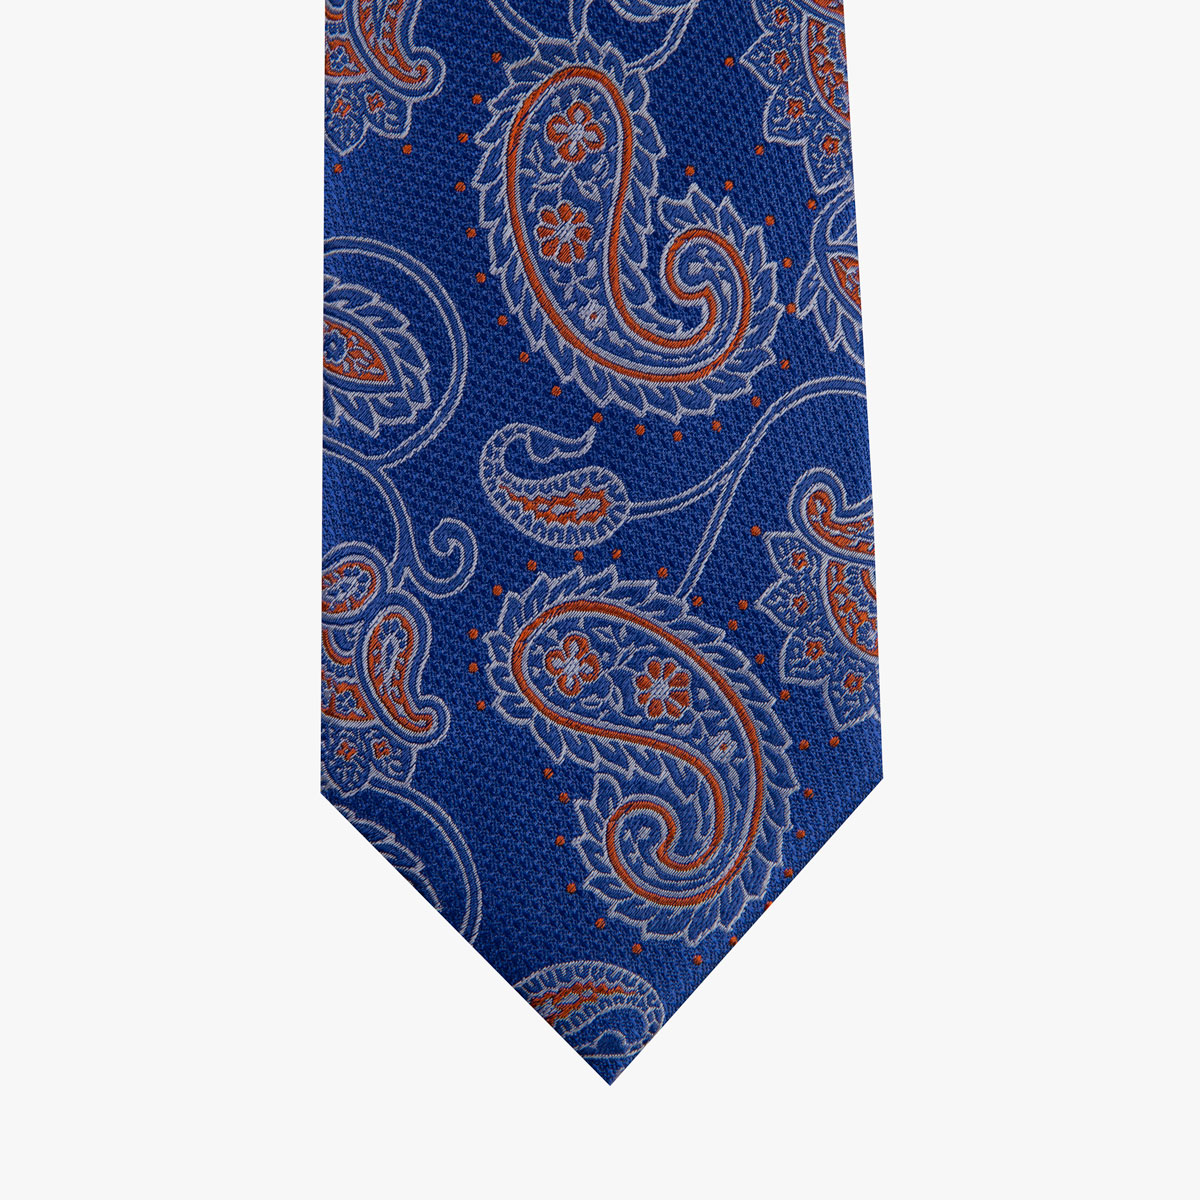 Krawatte glatt mit Paisley-Muster in blau und rot